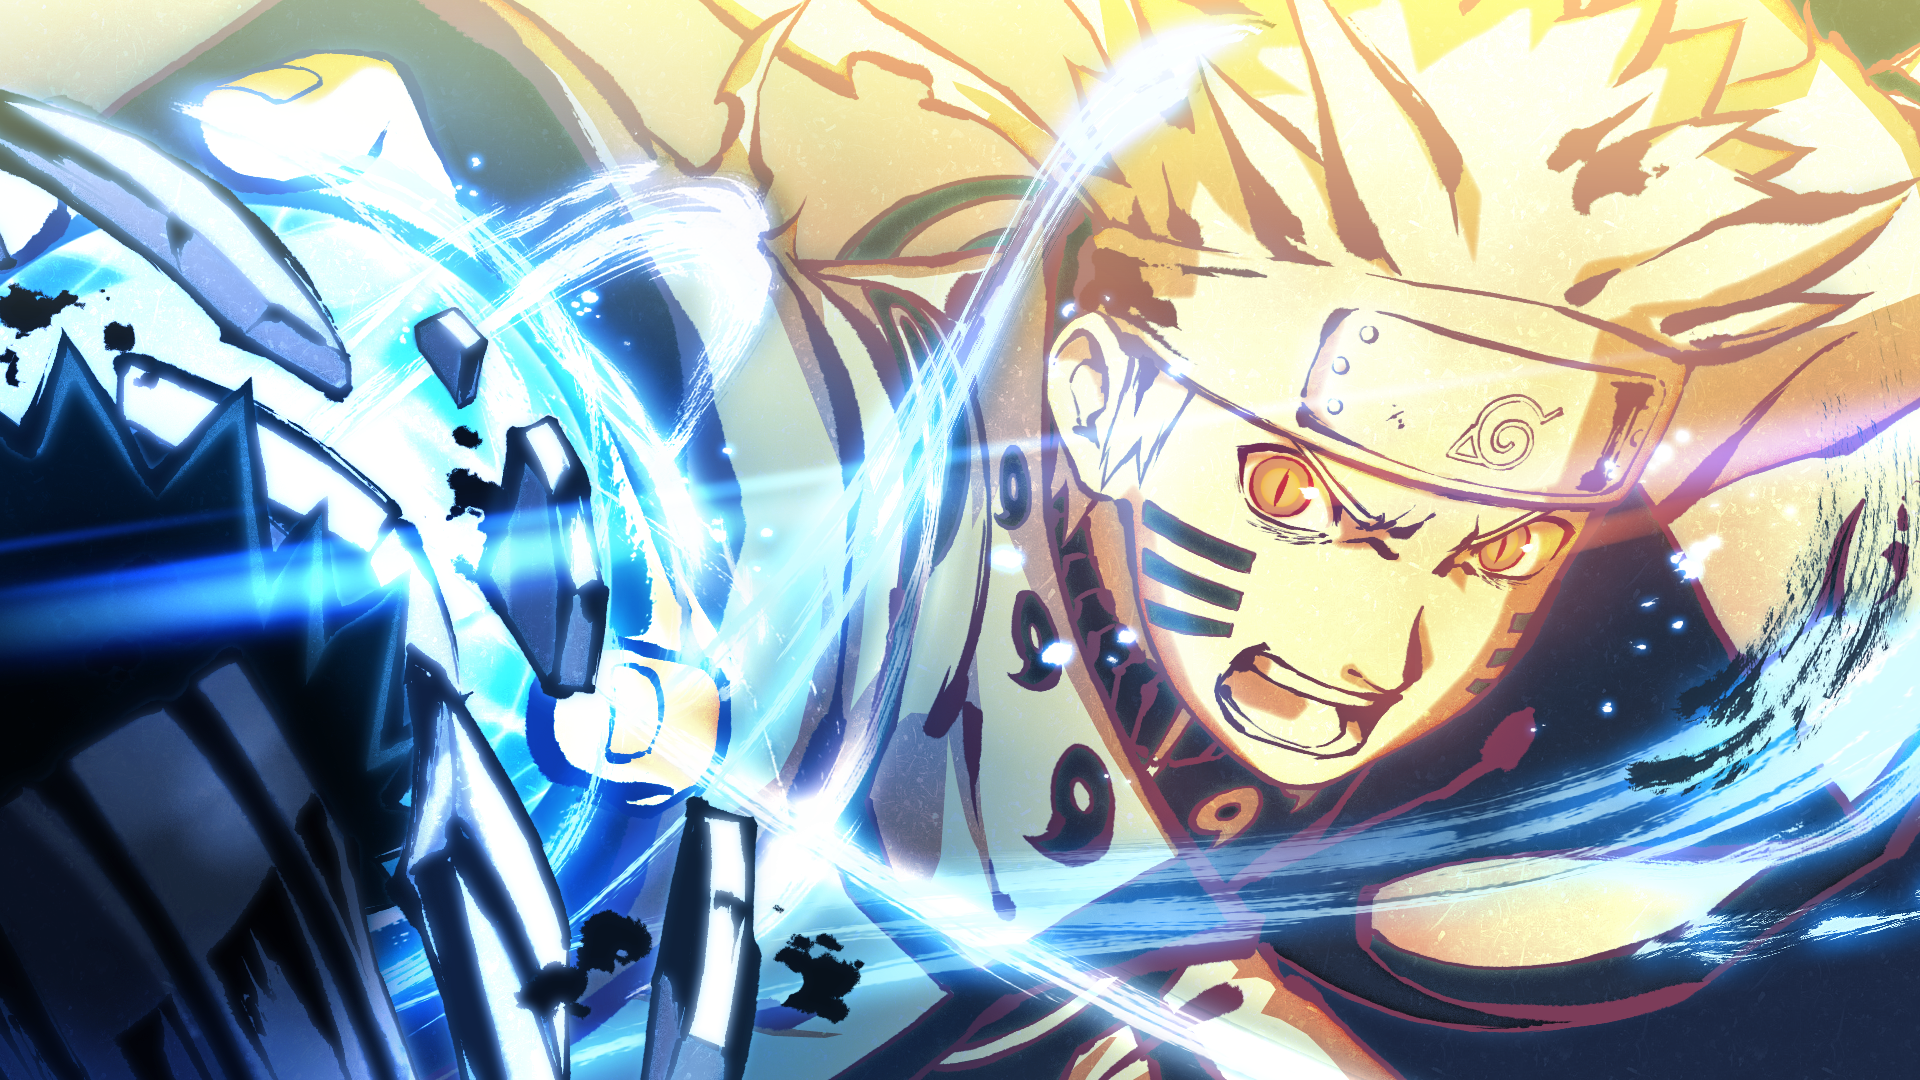 Naruto Shippuden, Ultimate Ninja Storm 4, HD Wallpapers: Tải những hình nền Naruto Shippuden và Ultimate Ninja Storm 4 độ phân giải cao để ngắm nhìn cảnh quan hùng vĩ, đẹp như tranh vẽ. Hãy để tâm trí bạn thư giãn và thỏa sức trải nghiệm.